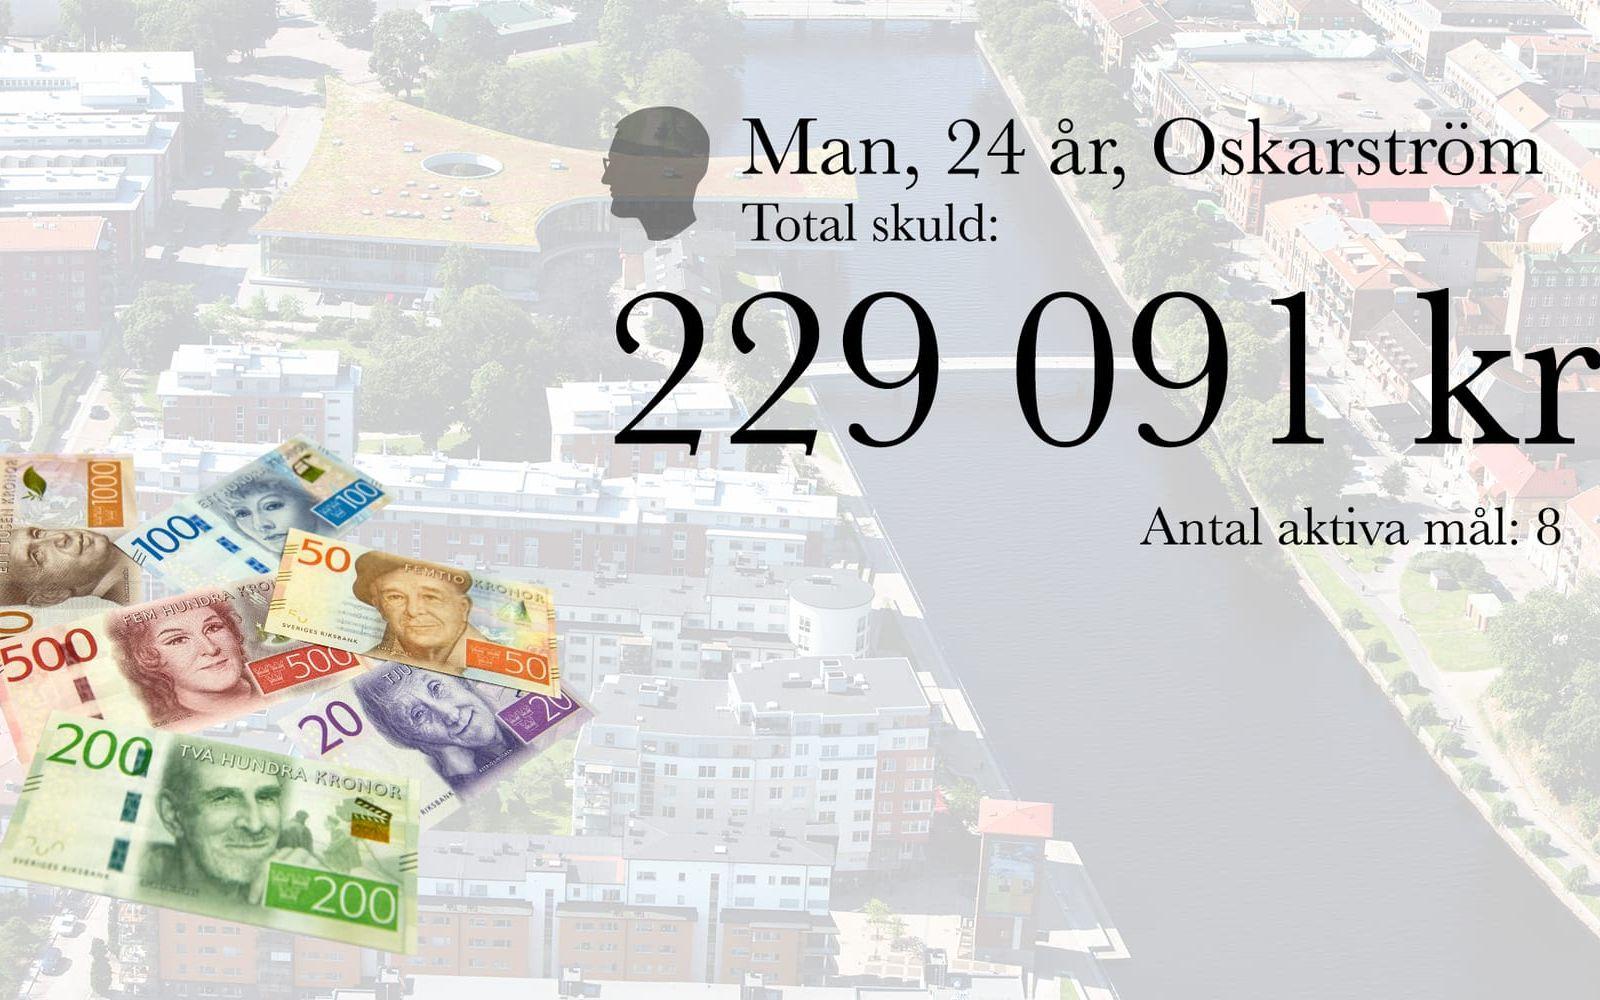 6. Man, 24 år, Oskarström. Total skuld: 229 091 kronor. Antal aktiva mål: 8.
